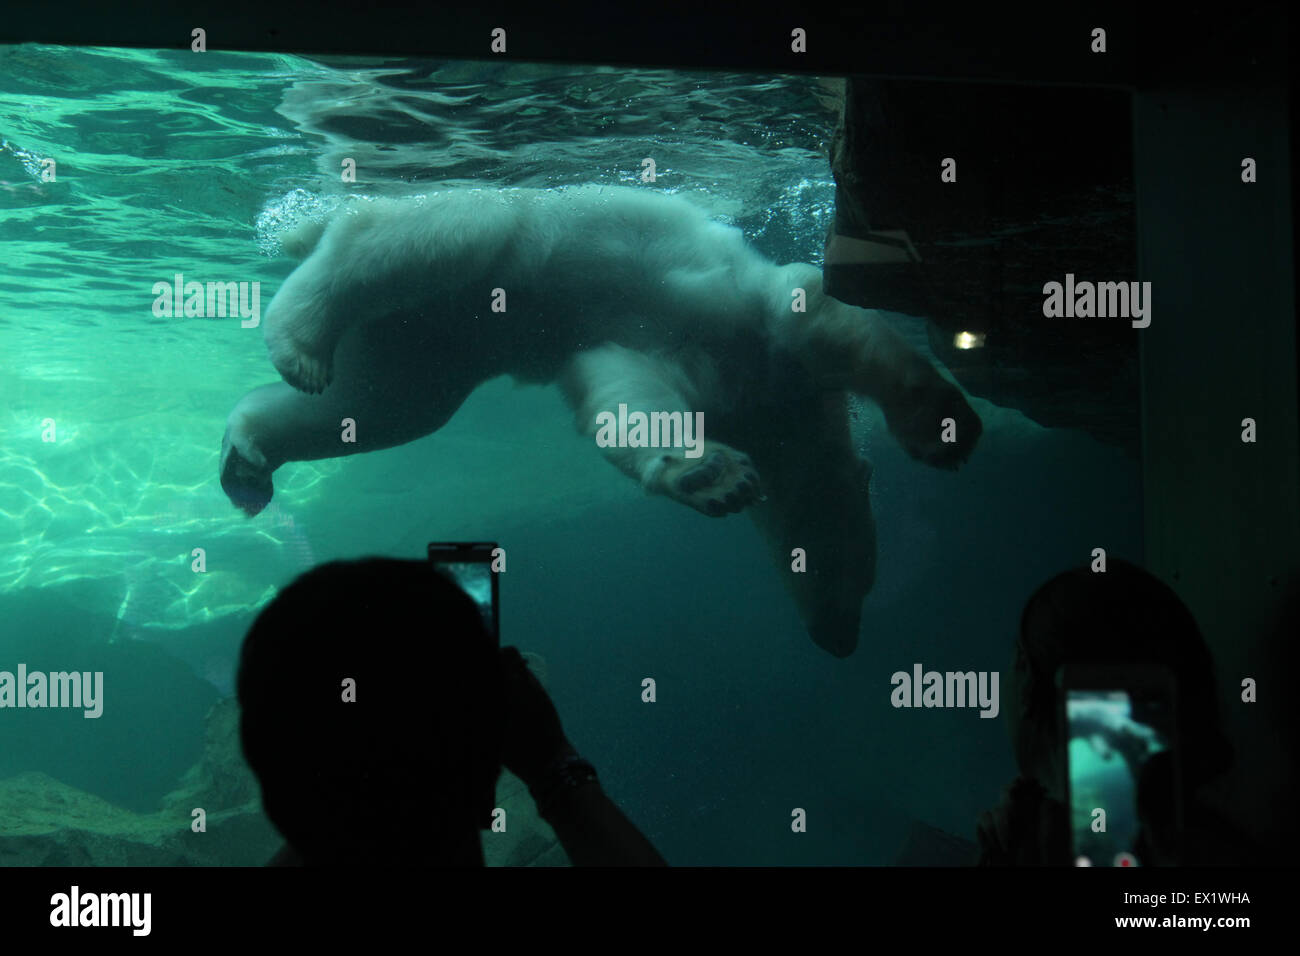 Visitors look as a polar bear (Ursus maritimus) swimming underwater at Schönbrunn Zoo in Vienna, Austria. Stock Photo